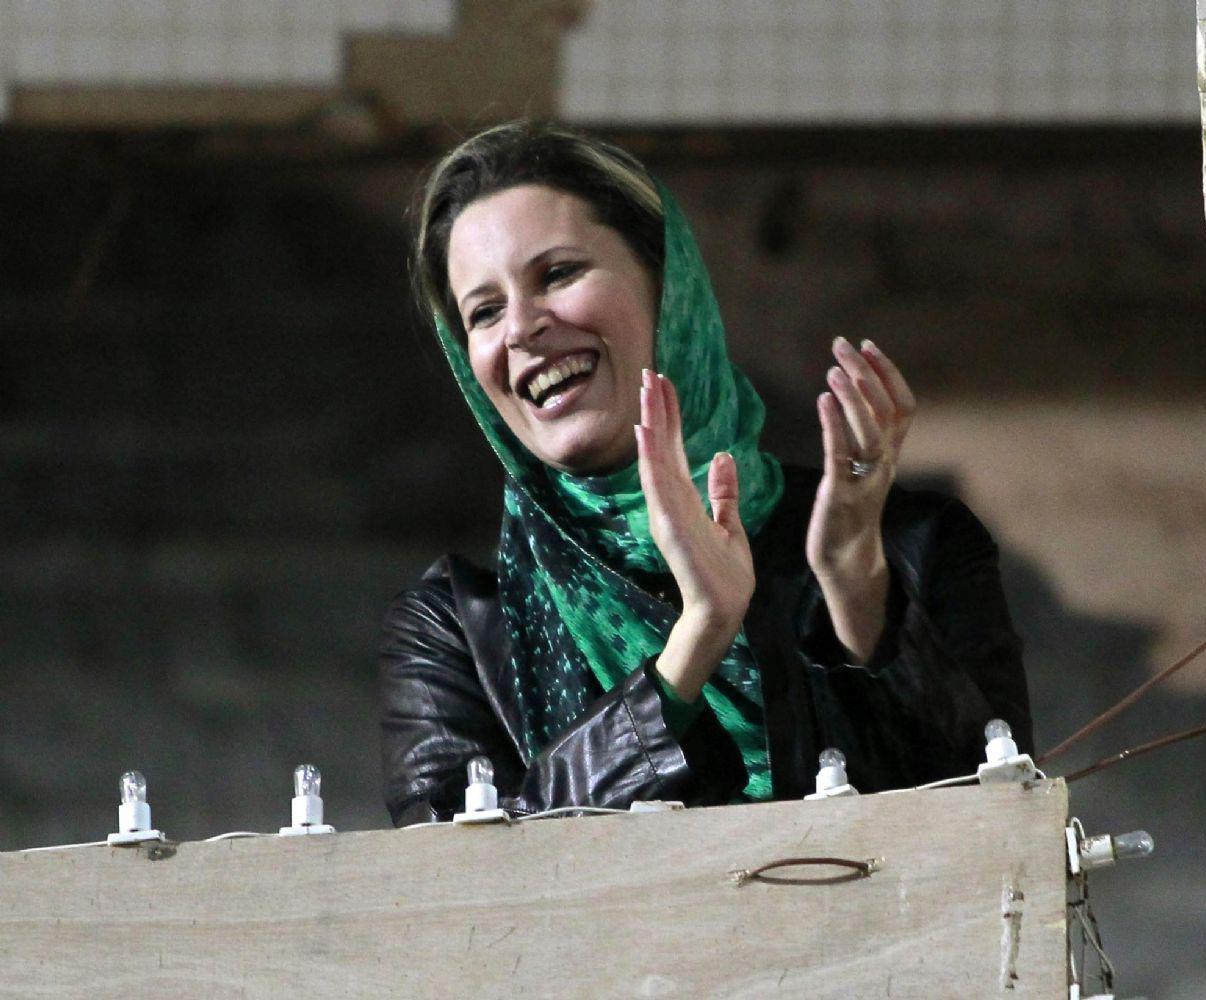 عائشة القذافي لا تمثل خطرا على الأمن والسلم برأي محكمة أوروبية